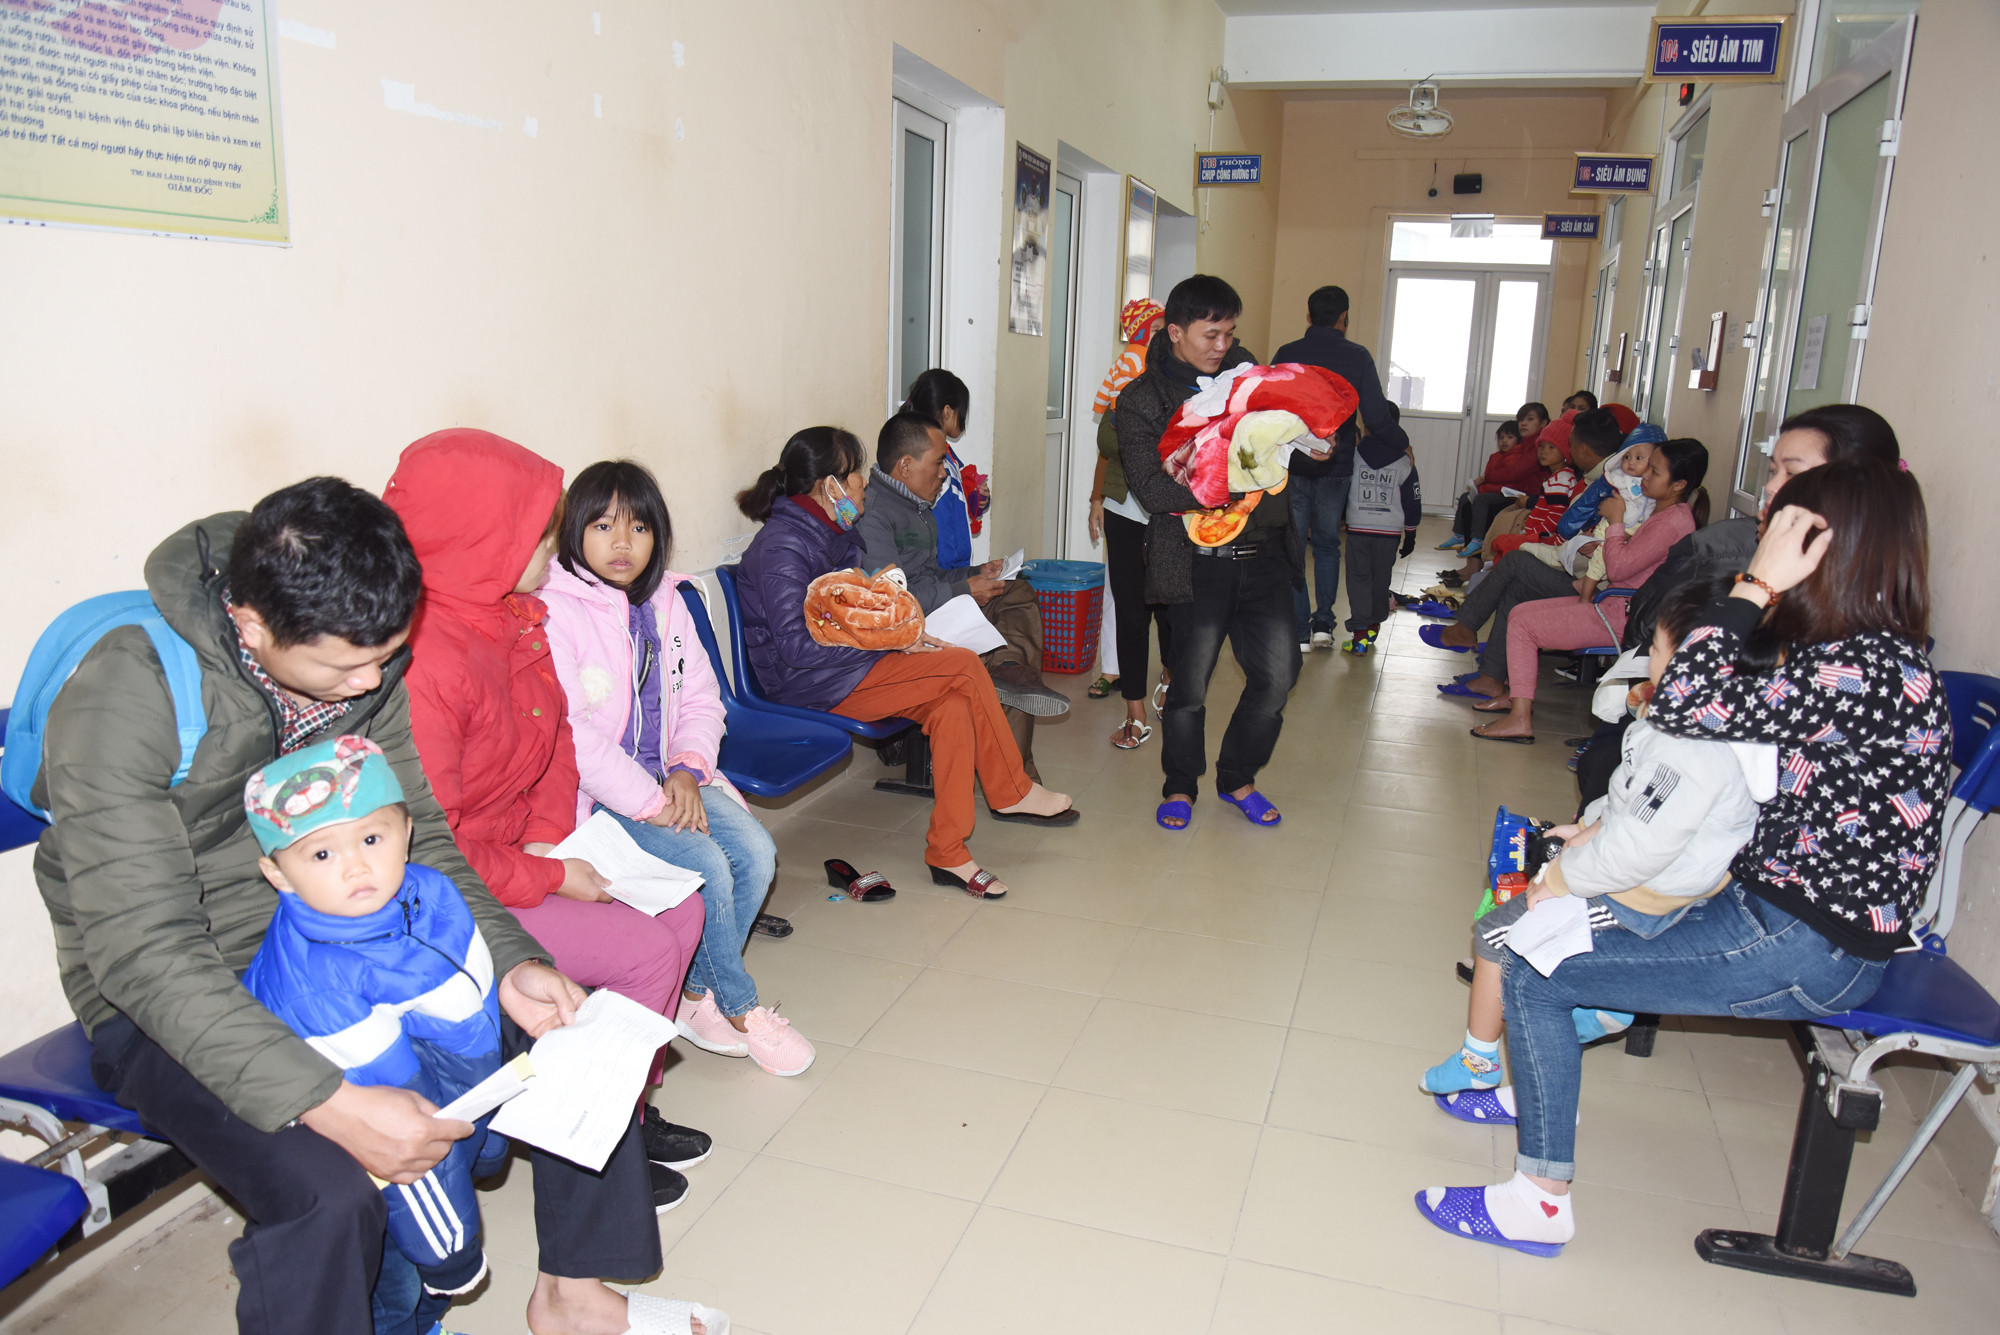 Sáng 02/1/2019, trời rét đậm. Rất đông phụ huynh đưa trẻ tới khám ở Bệnh viện Sản Nhi Nghệ An. Ảnh: Thanh Hoa